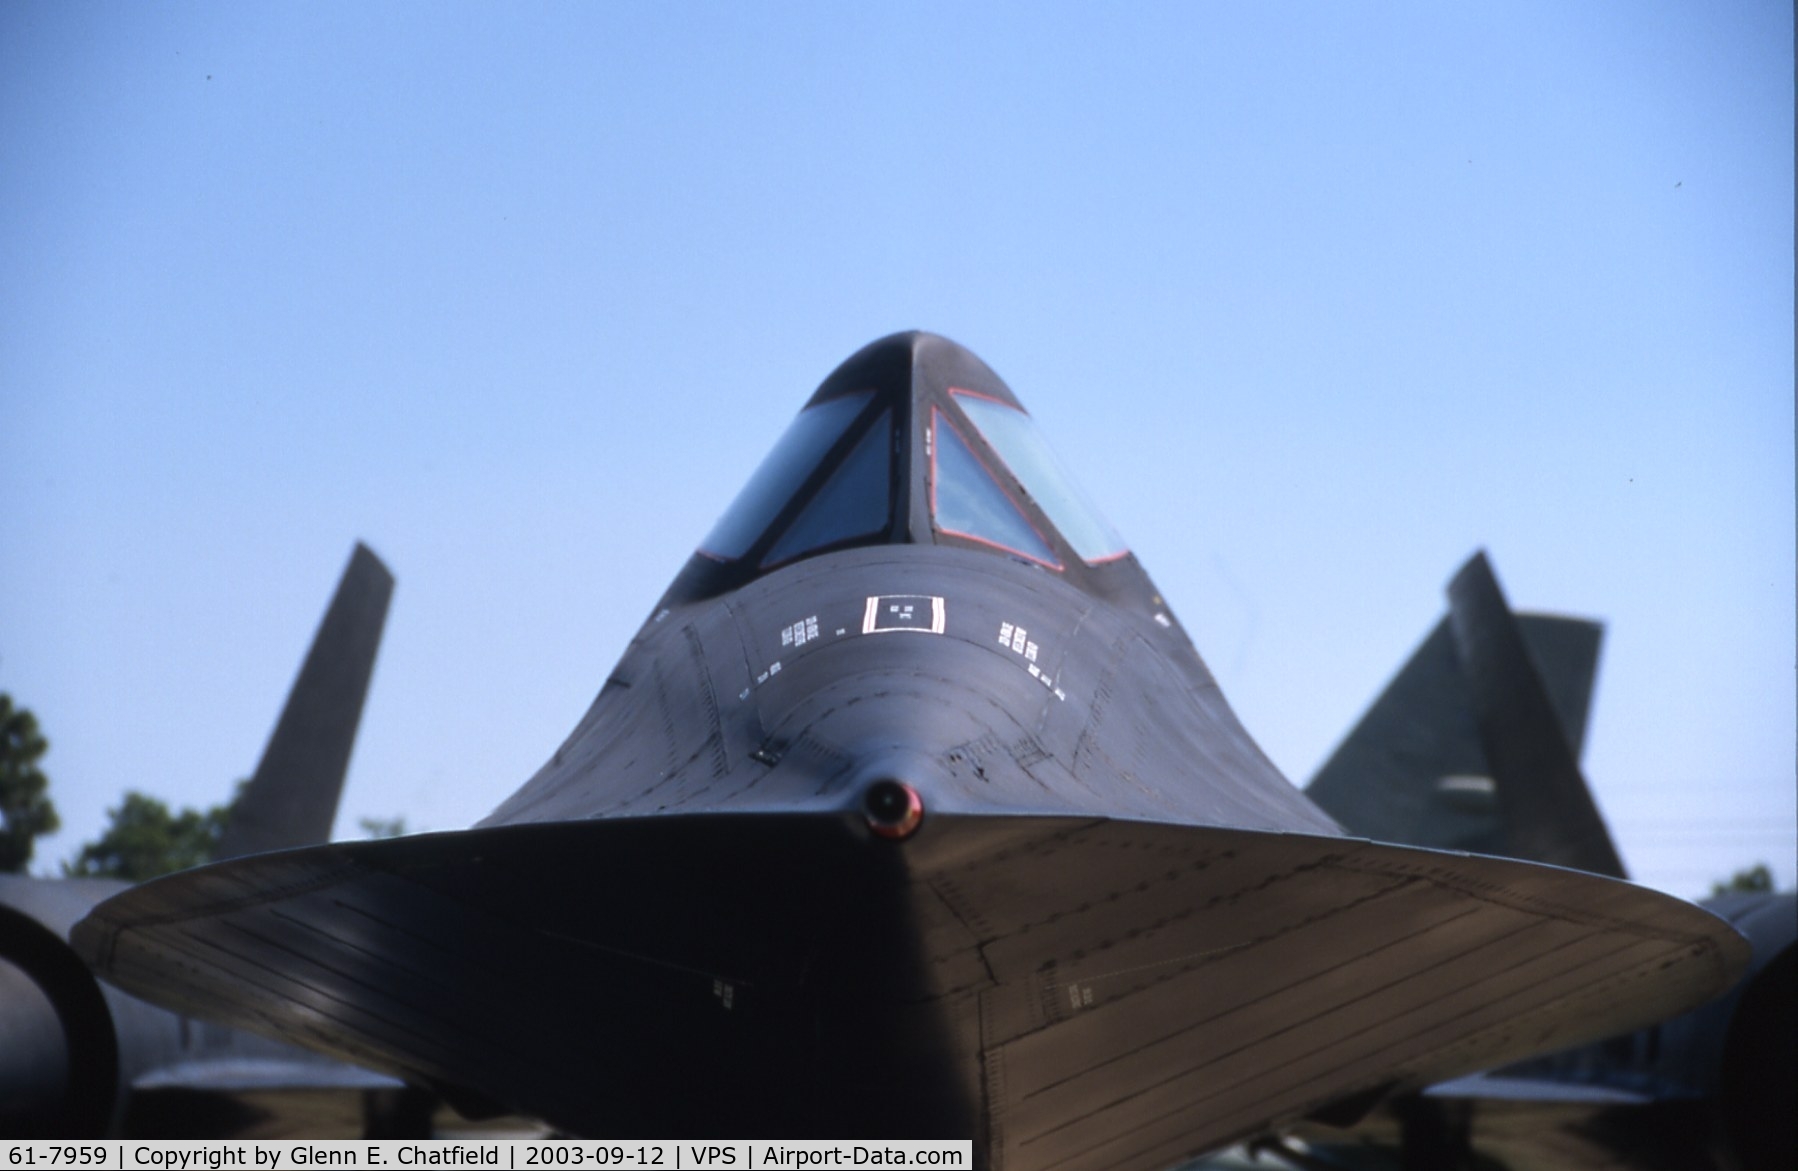 61-7959, 1961 Lockheed SR-71A Blackbird C/N 2010, A real close-up!  Makes an artistic scene